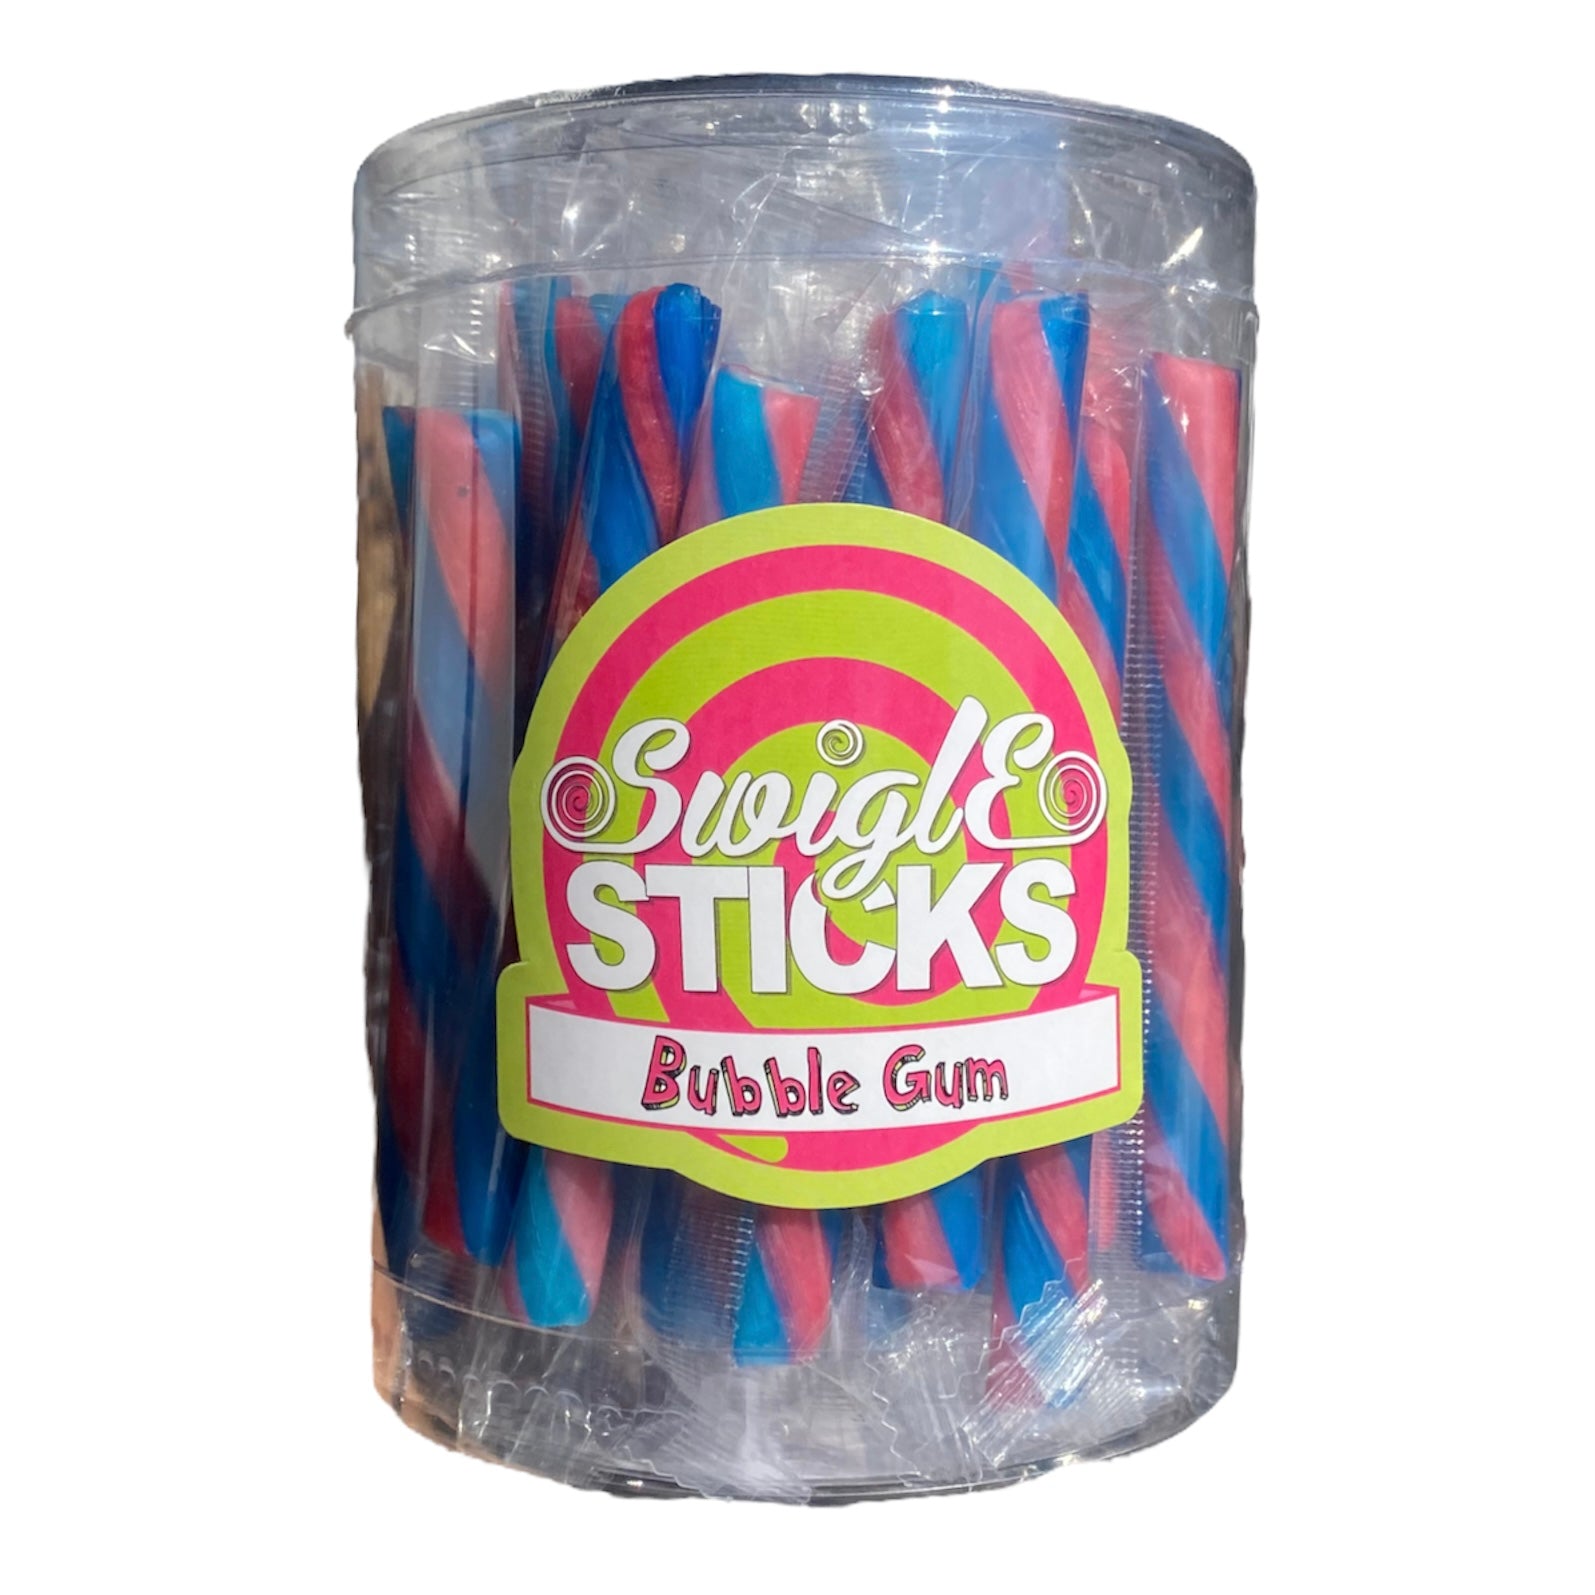 Bubble gum sticks